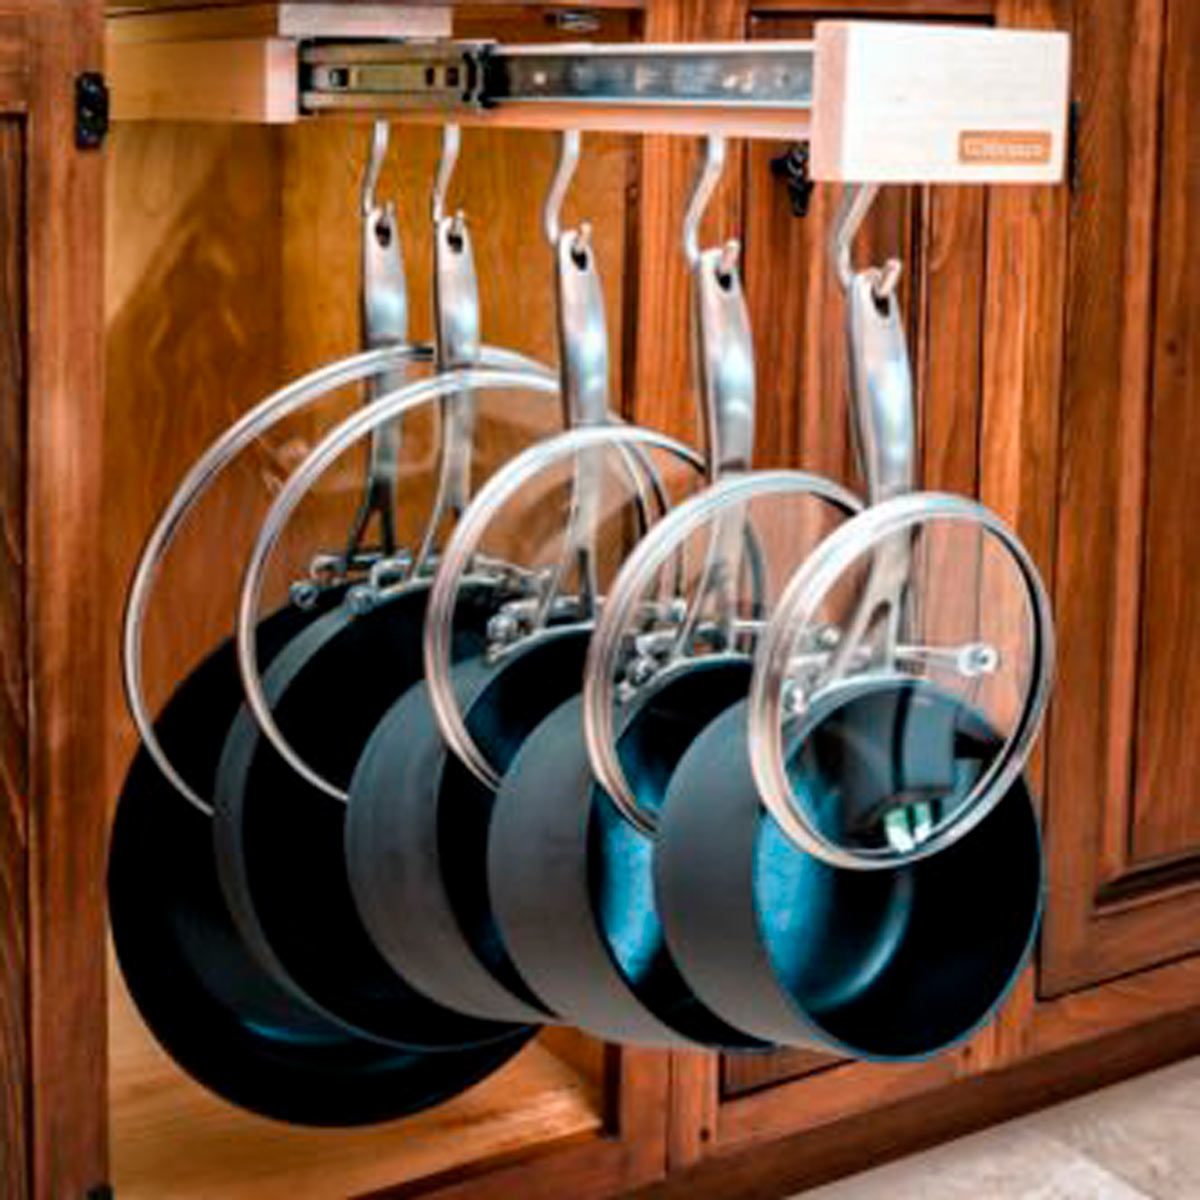 Kitchenaid Tool Holder 4 Set Under Cabinet Storage Mount Organize